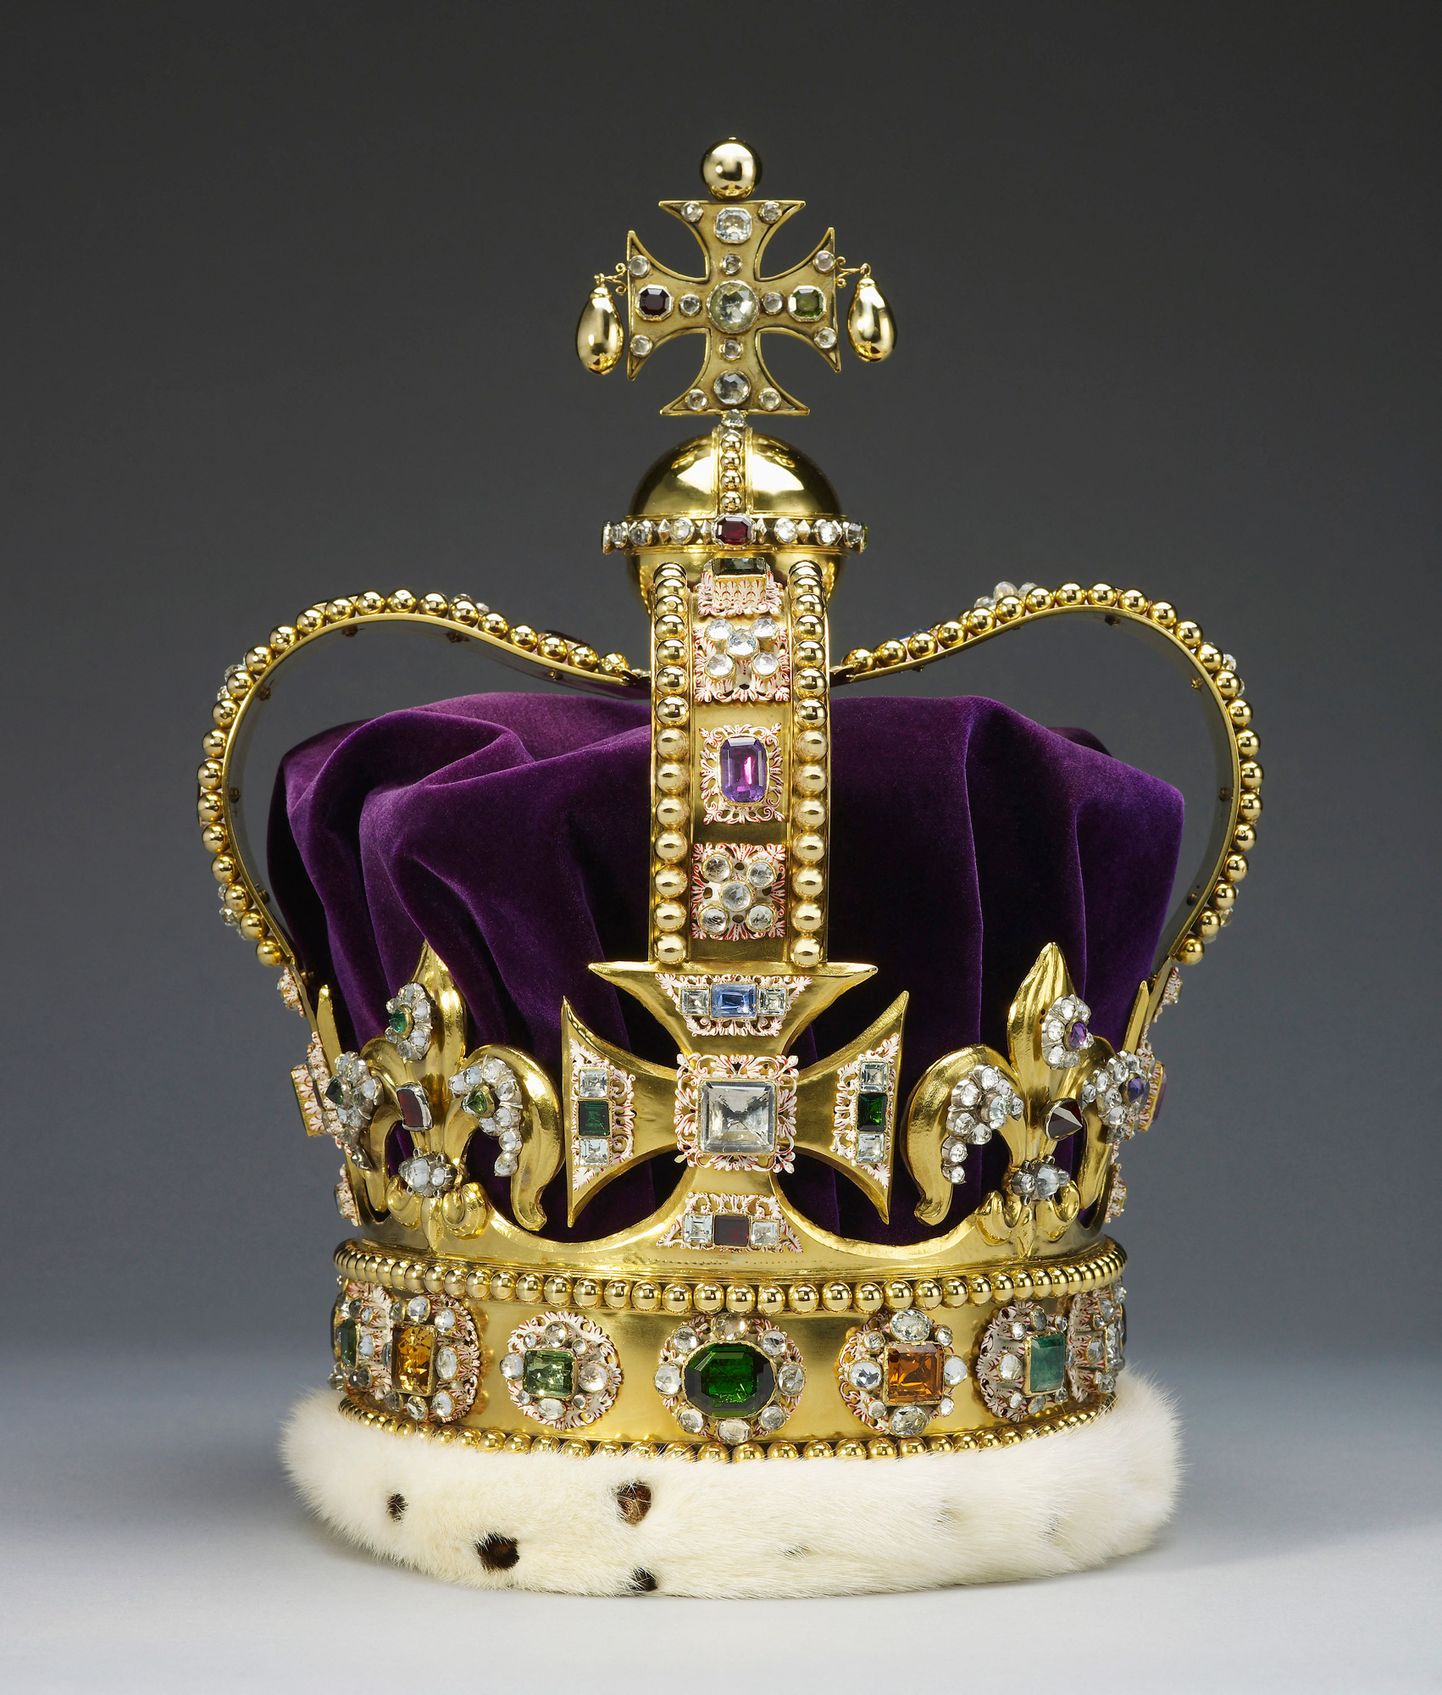 Püha Edwardi kroon, mille lasi valmistada oma kroonimiseks 1661 Inglise kuningas Charles II ja mida kannab oma kroonimisel 6. mail ka Charles III